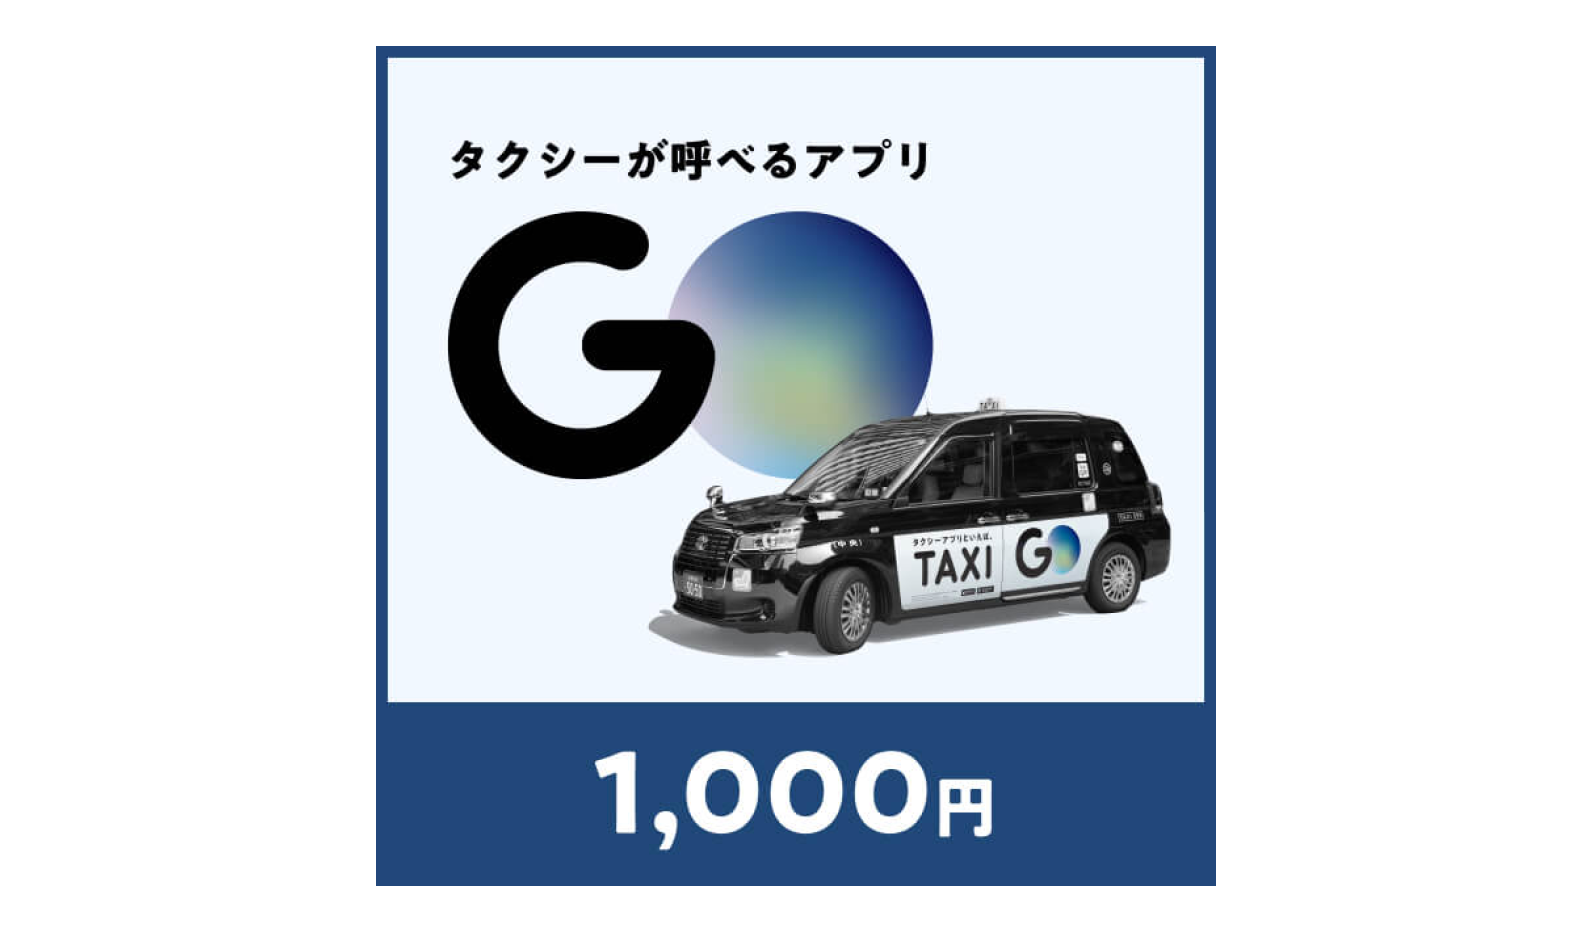 7.電子タクシーチケット 1,000円